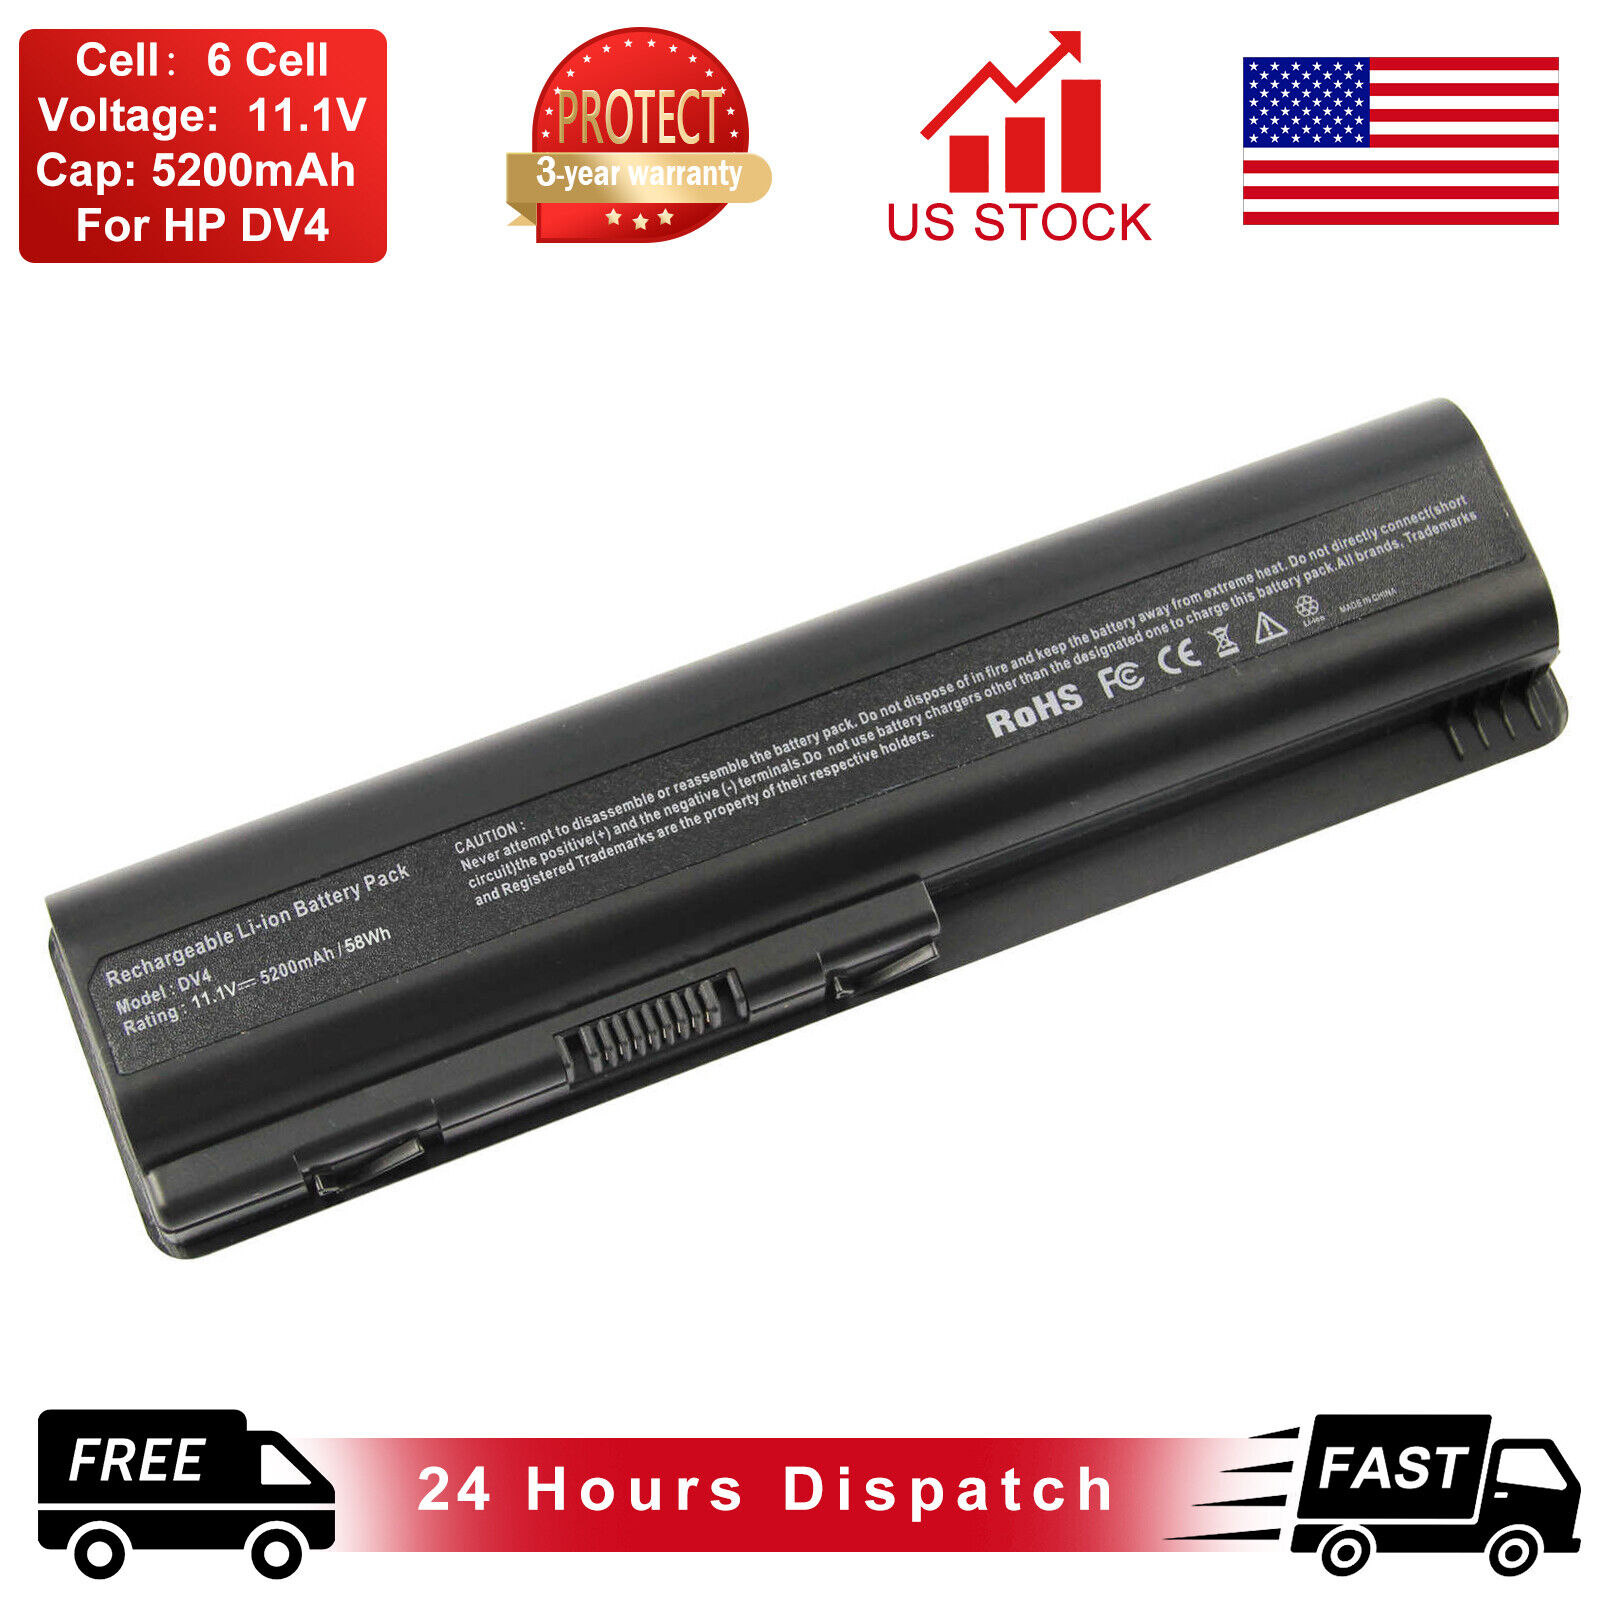 Battery For HP Pavilion DV4-1000  DV5-1000 DV6-1000 G50 G60 G61 G70 G71 Series 